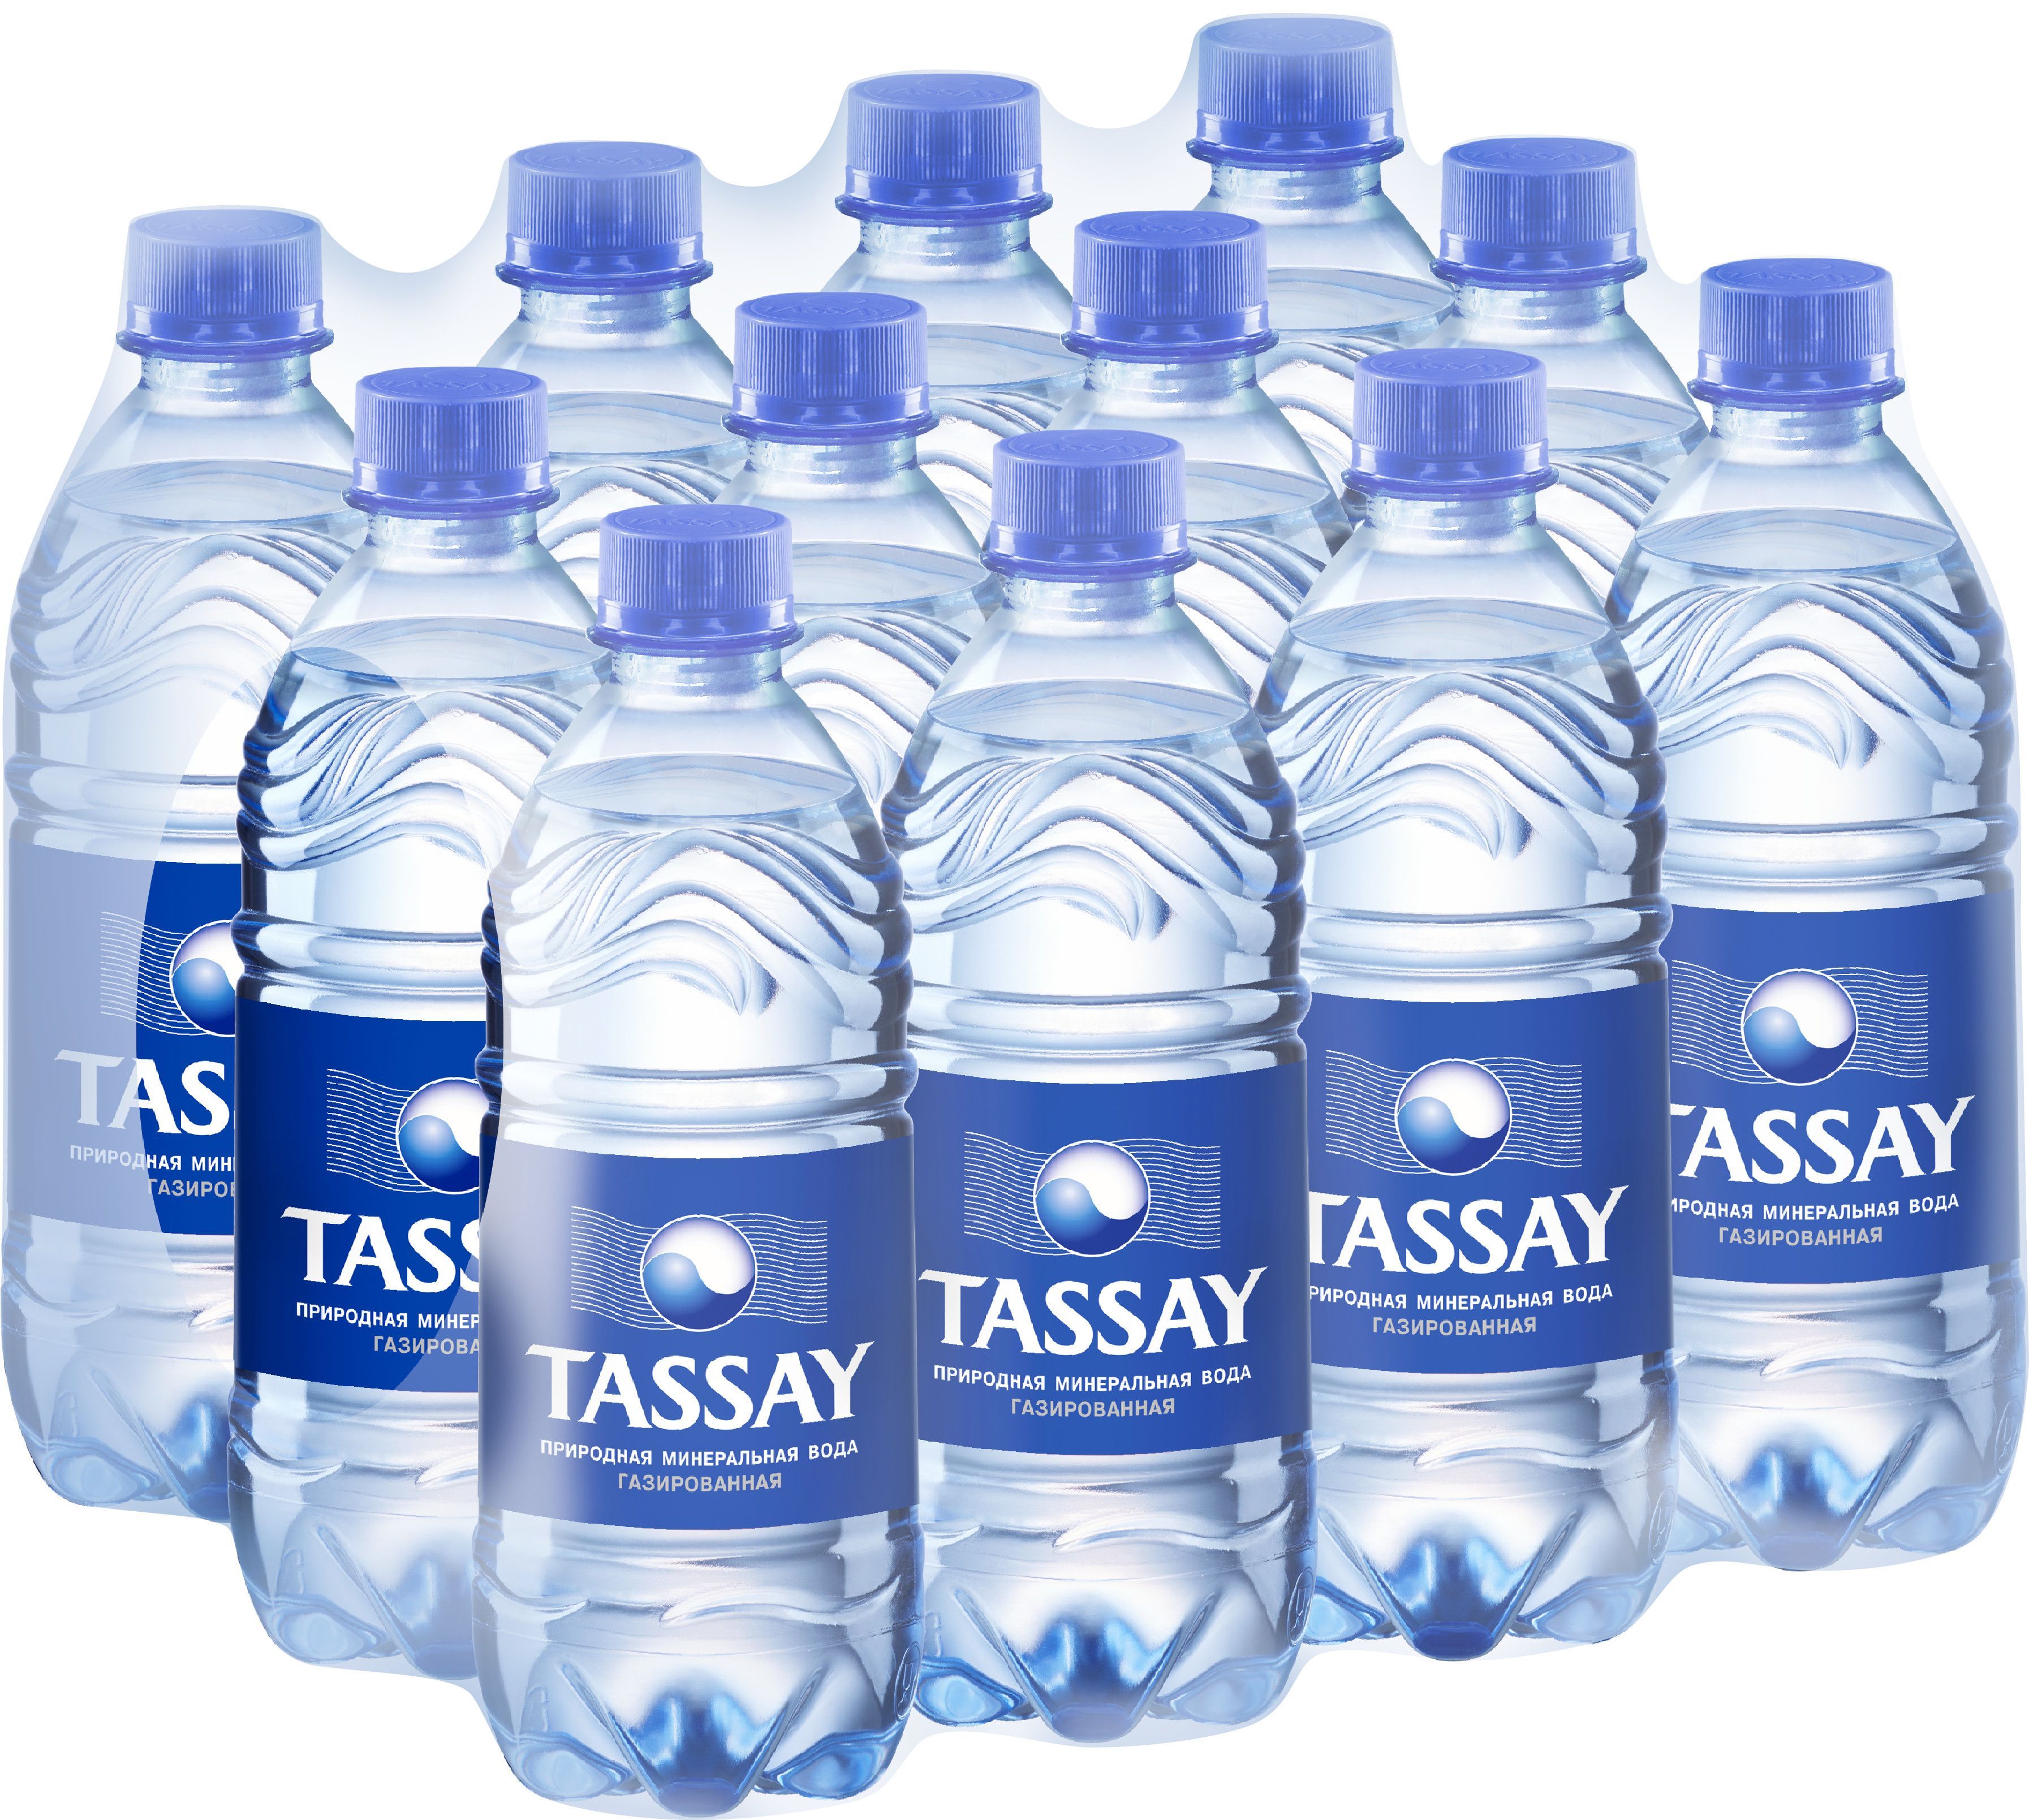 Минеральная вода Tassay. Тассай 0.5 ПЭТ. Tassay вода 0.5. Тассай вода ПЭТ 0.5. Вода 0.5 газированная